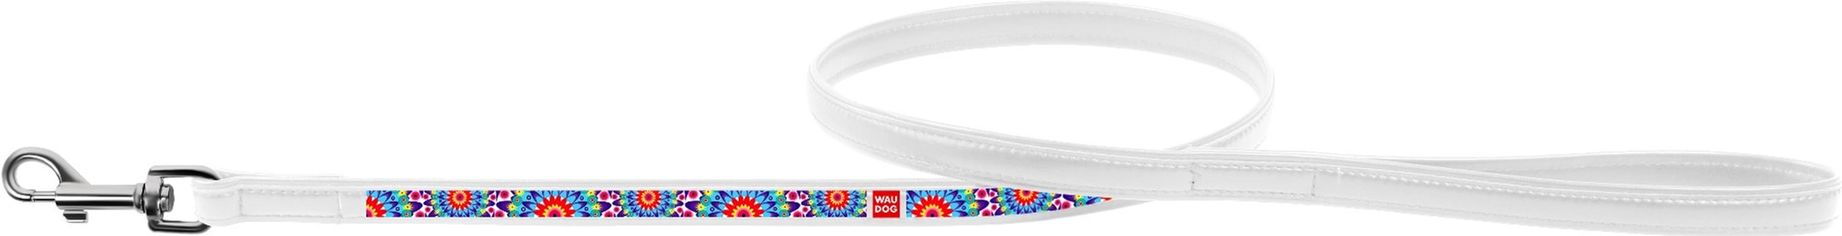 Акция на Поводок Collar WauDog с рисунком Цветы 122 см 25 мм Белый (379215) (4823089310022) от Rozetka UA